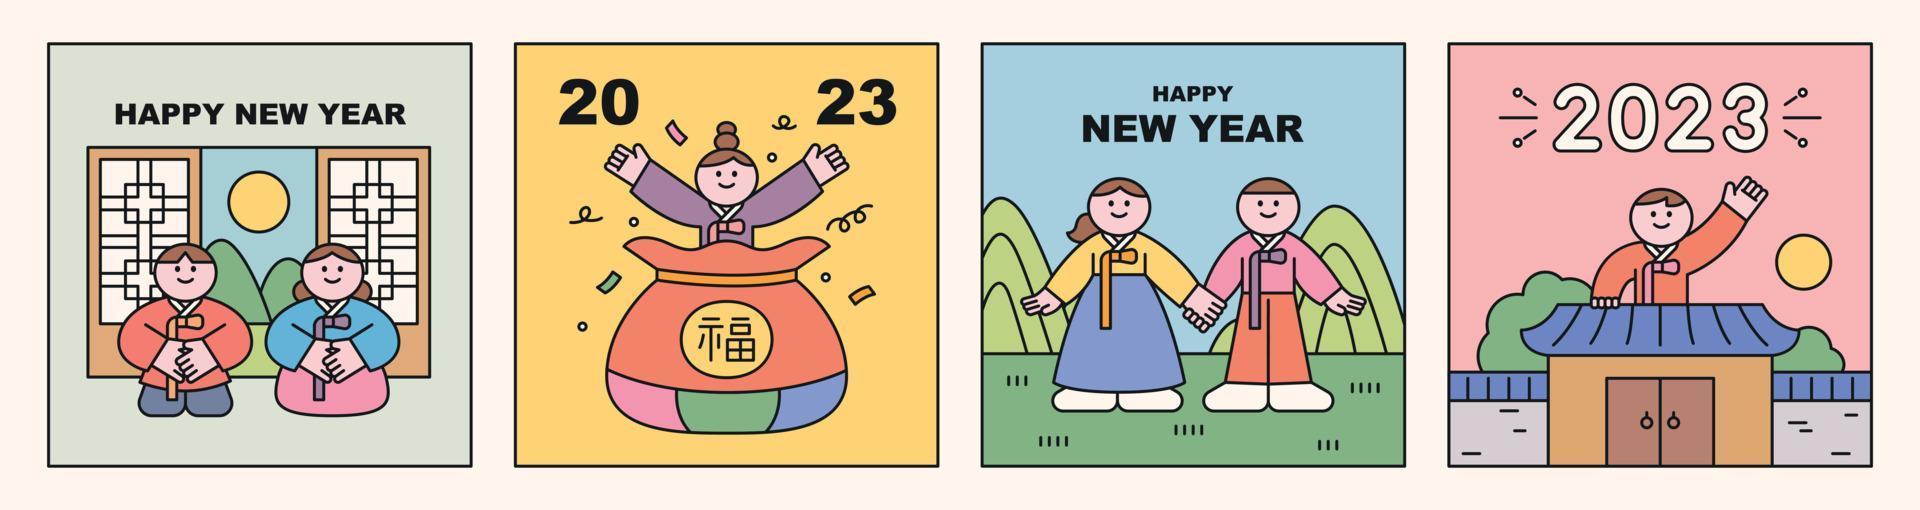 Neujahrskarte. süße Charaktere in traditionellen koreanischen Kostümen begrüßen das neue Jahr. vektor